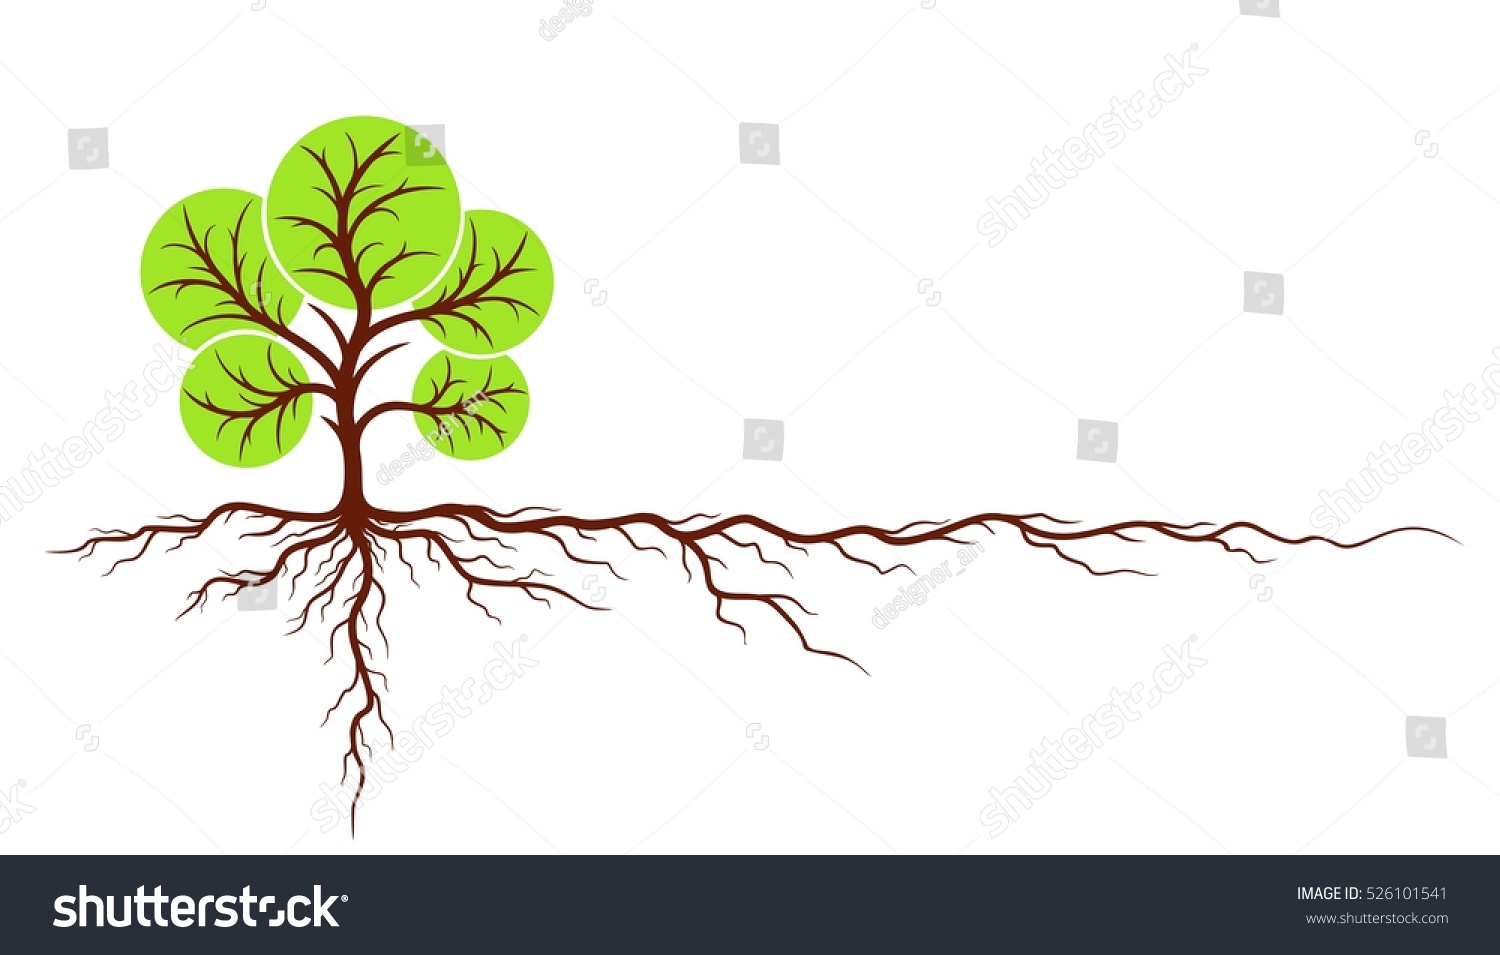 Tree Roots Stock Vector 526101541 - Shutterstock